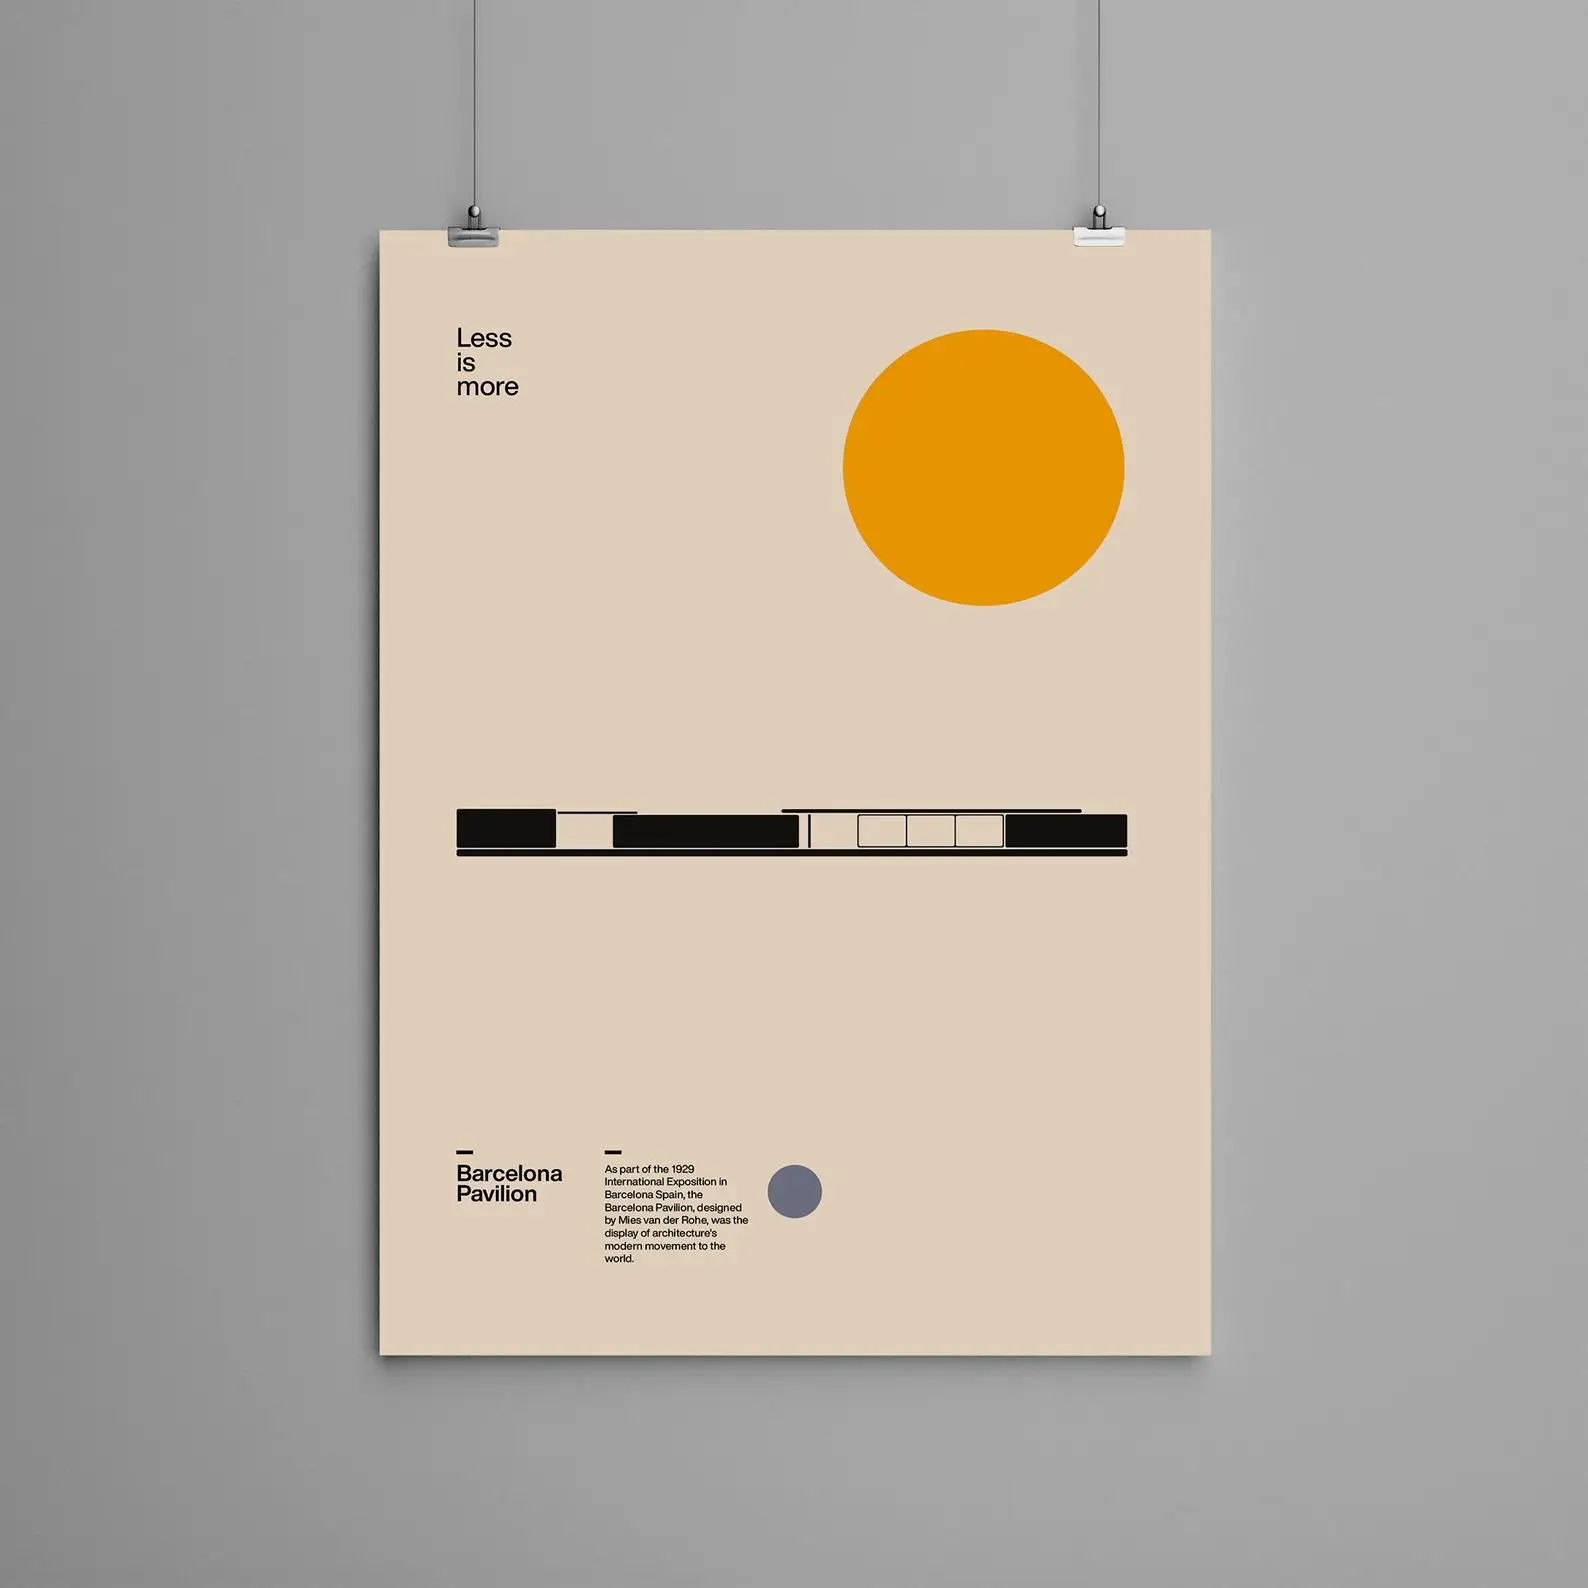 Плакат Барселона павильон лудпариков риэс ван дер рохэ минималистичный дизайн